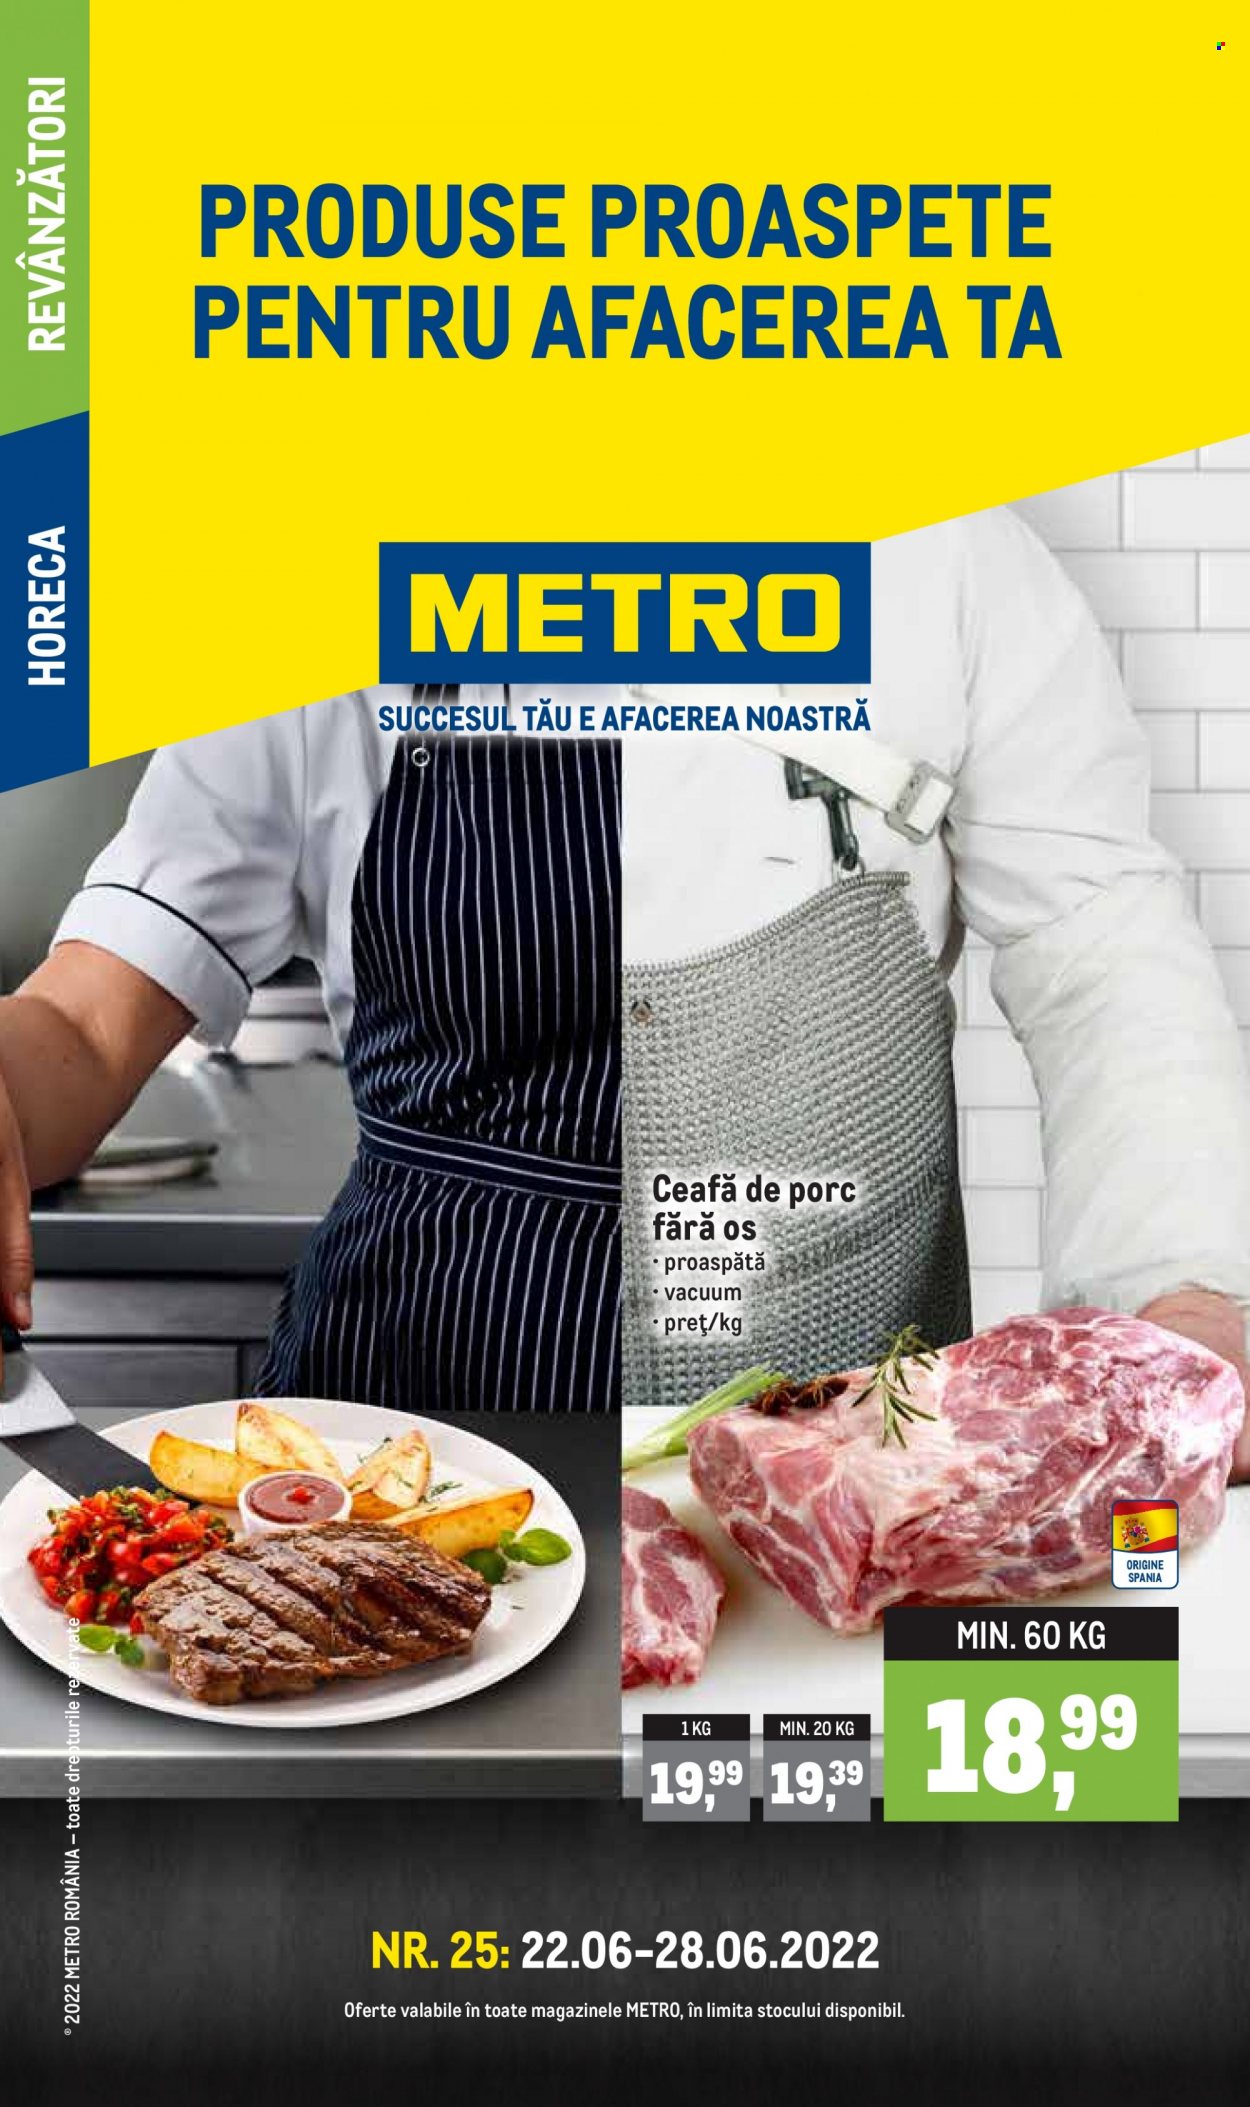 Cataloage Metro - 22.06.2022 - 28.06.2022 - Produse în vânzare - carne de porc, ceafă de porc. Pagina 1.